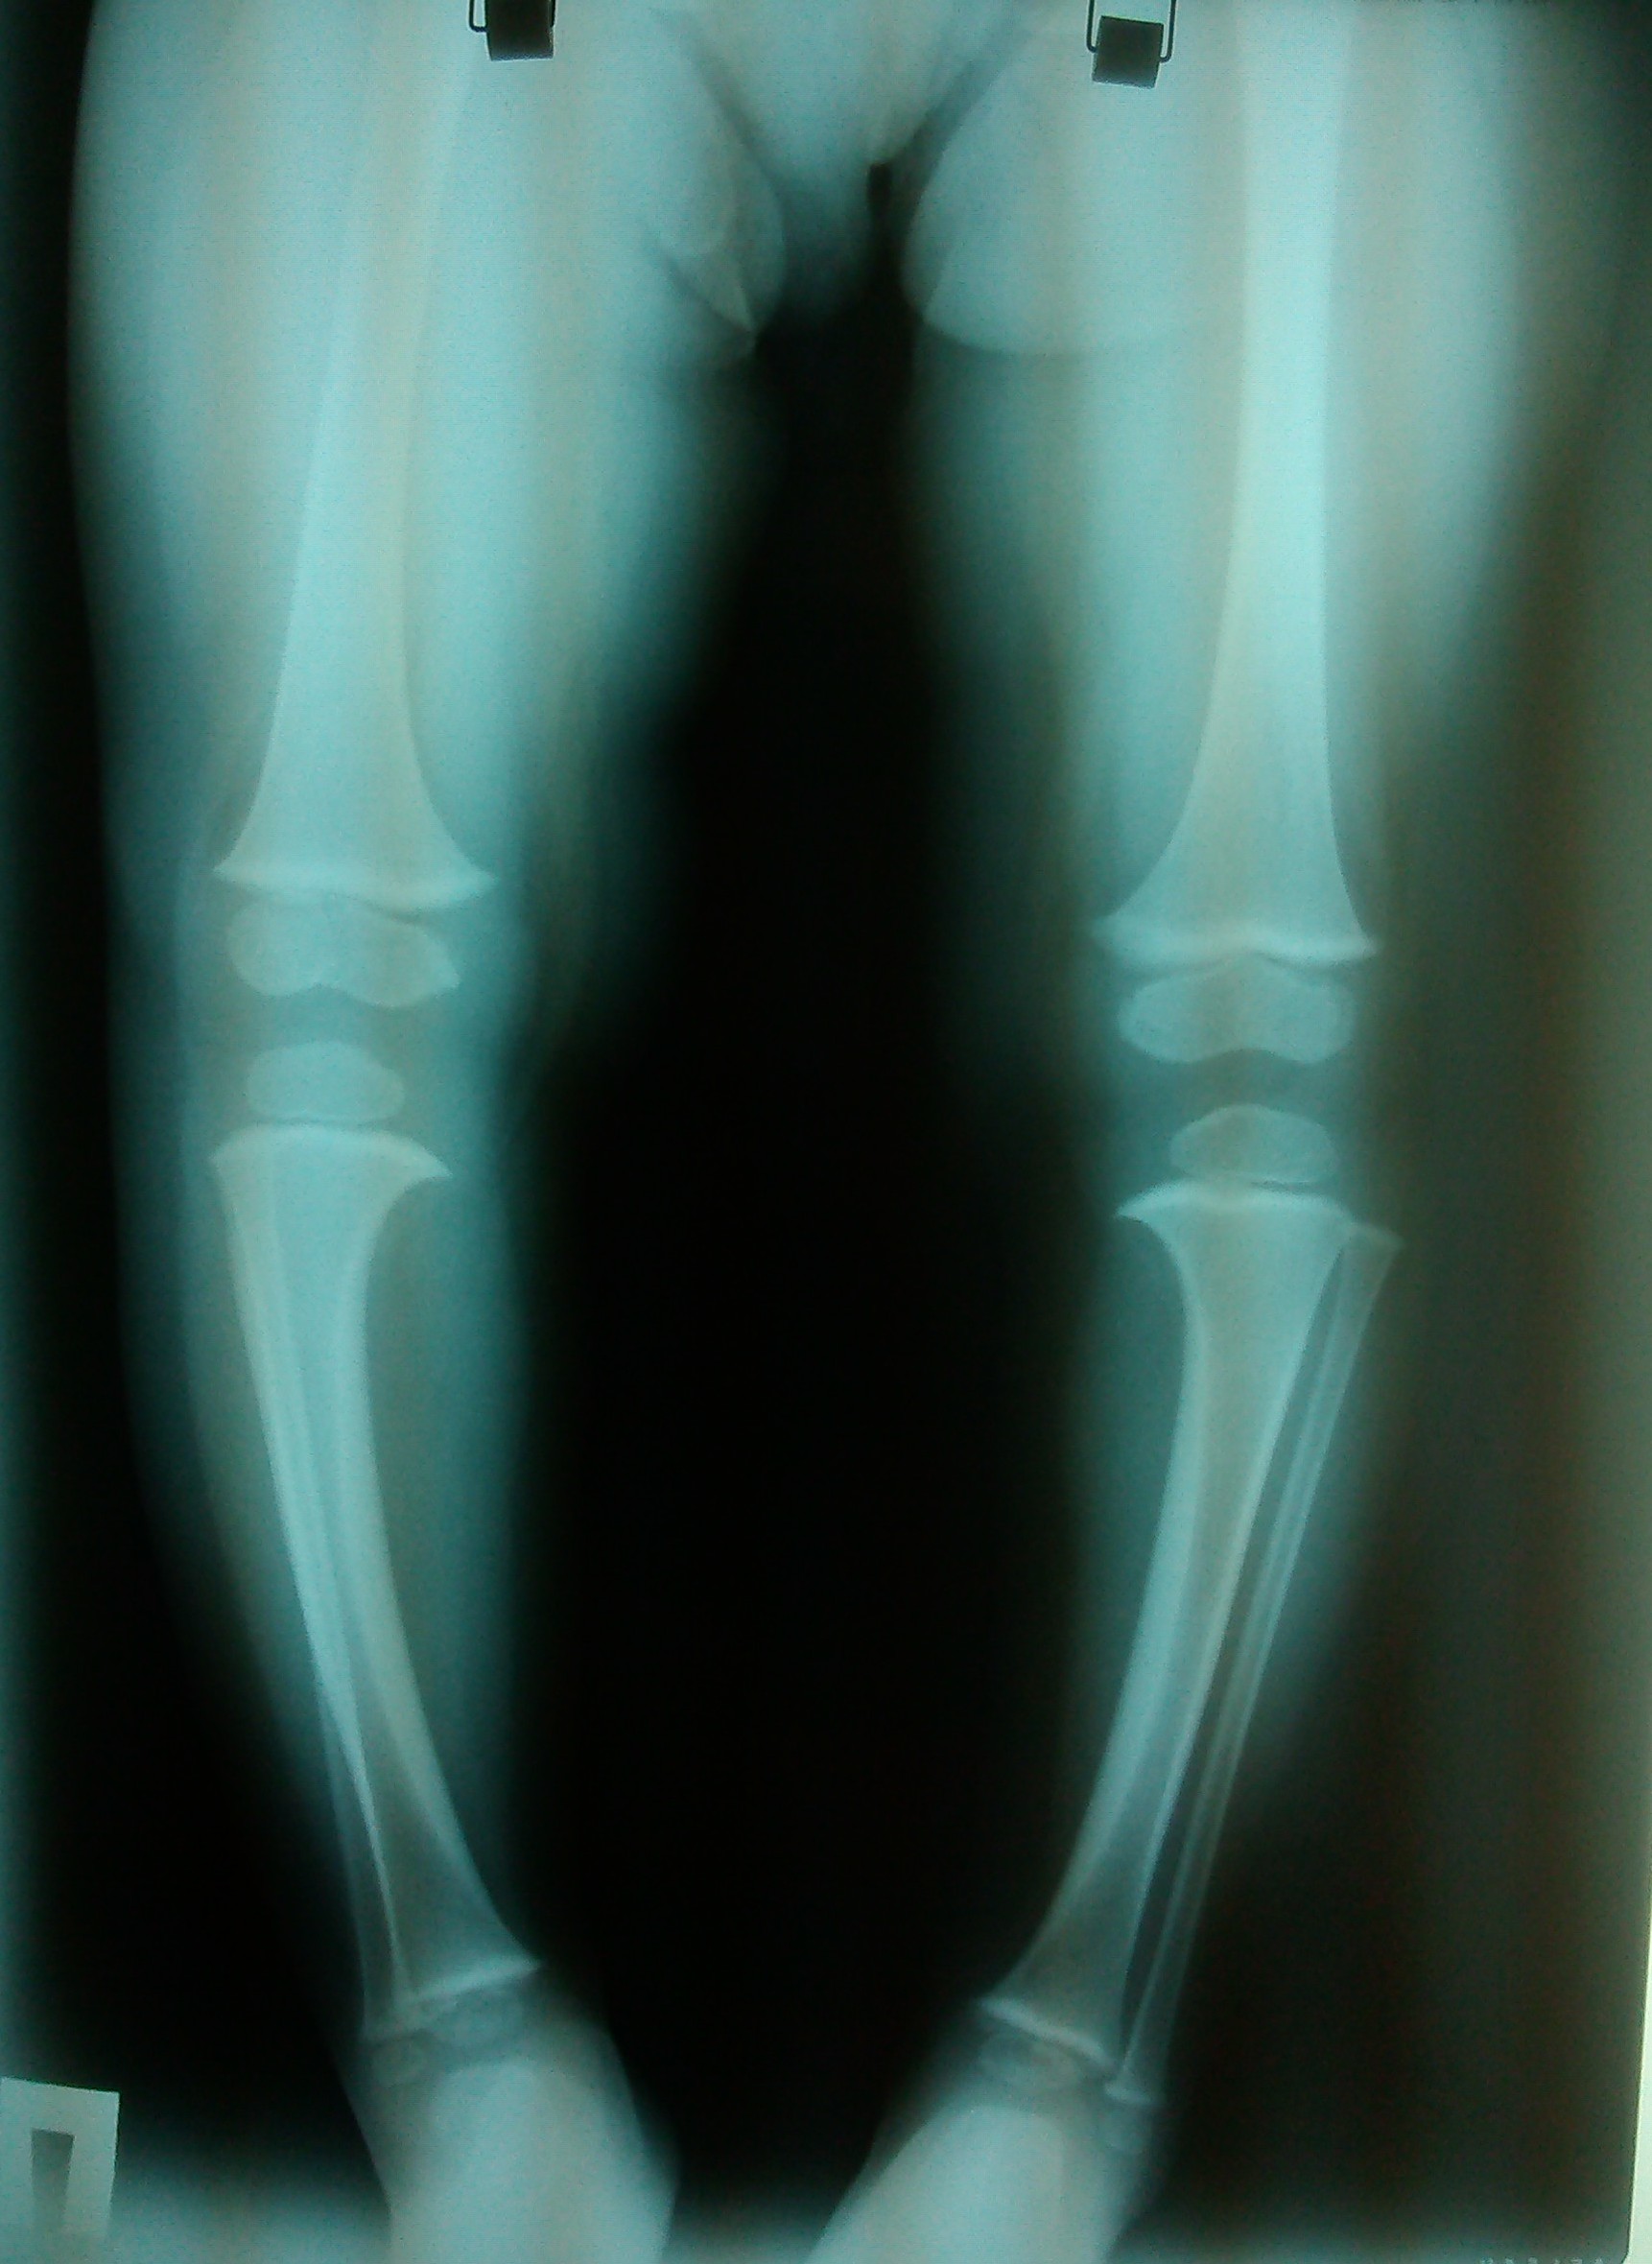 Фото рентгена ноги